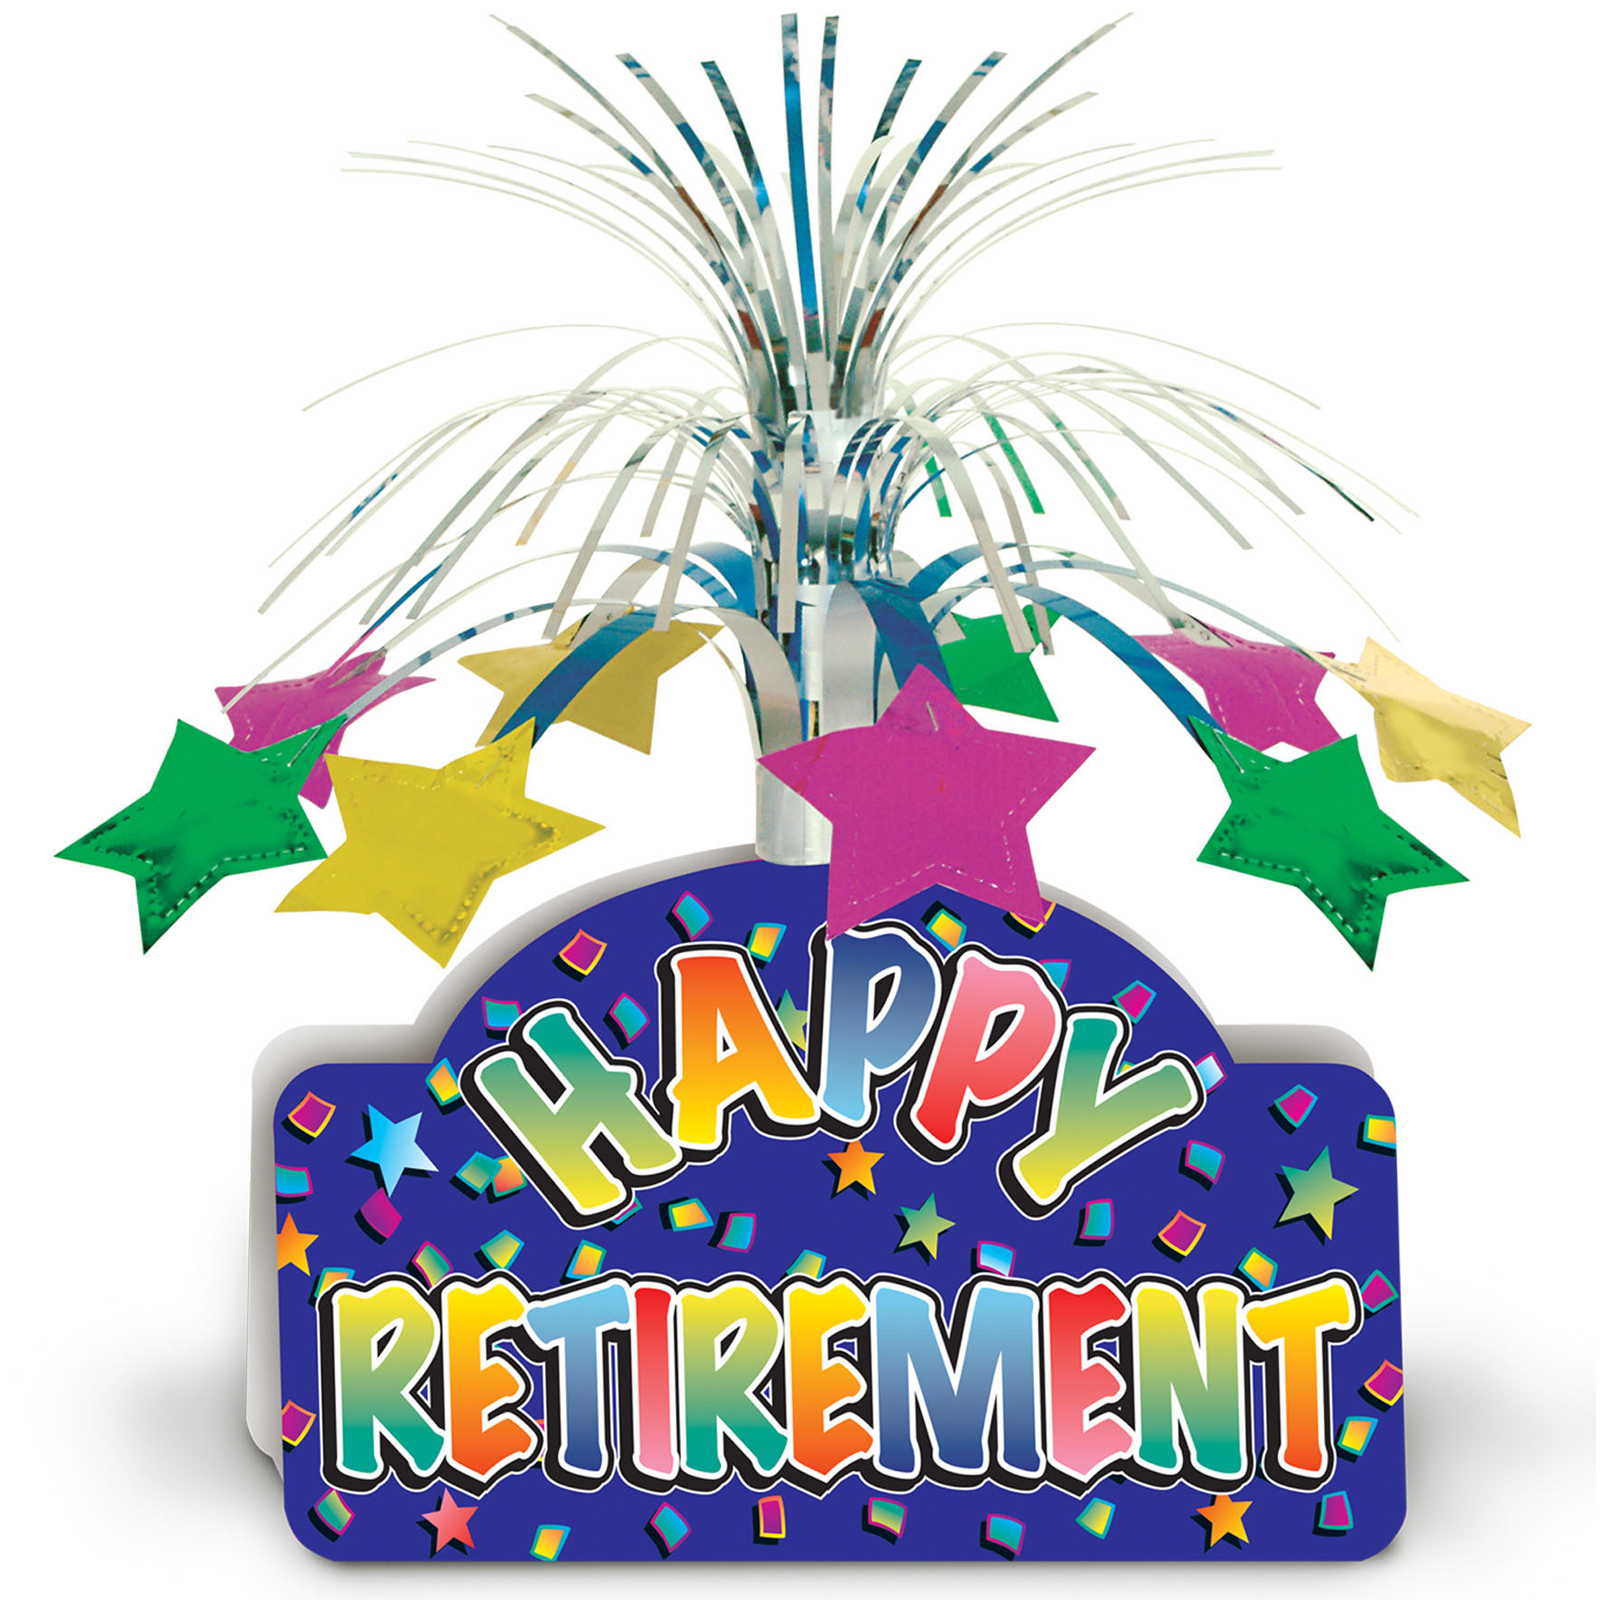 Happy retirement clipart images